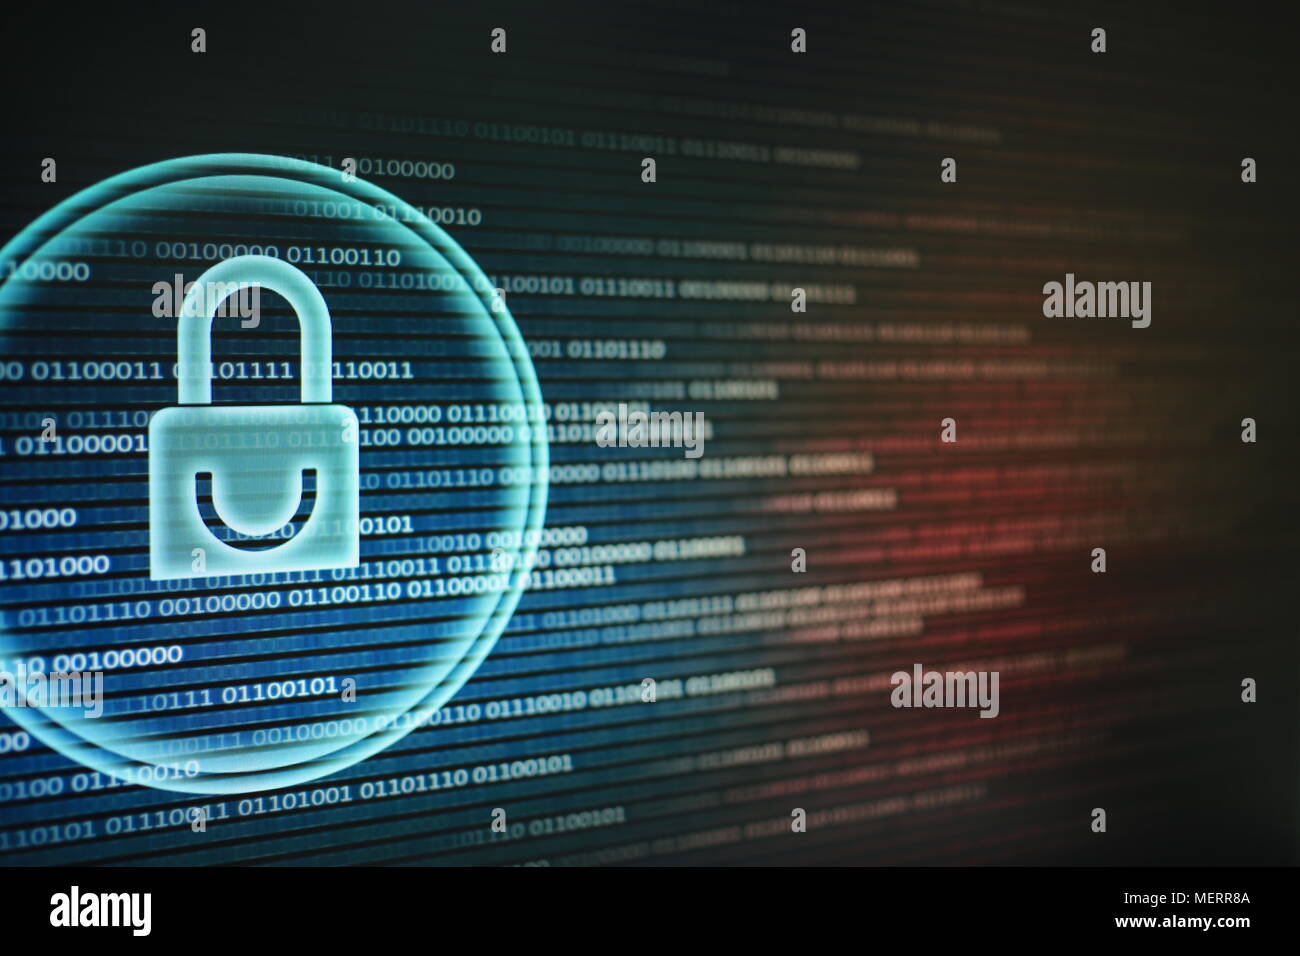 Weiße grafische Symbol eines Vorhängeschlosses auf binären Computer Display - computer Datenschutz. Internet Business passwort Cyber Security System Konzept Stockfoto